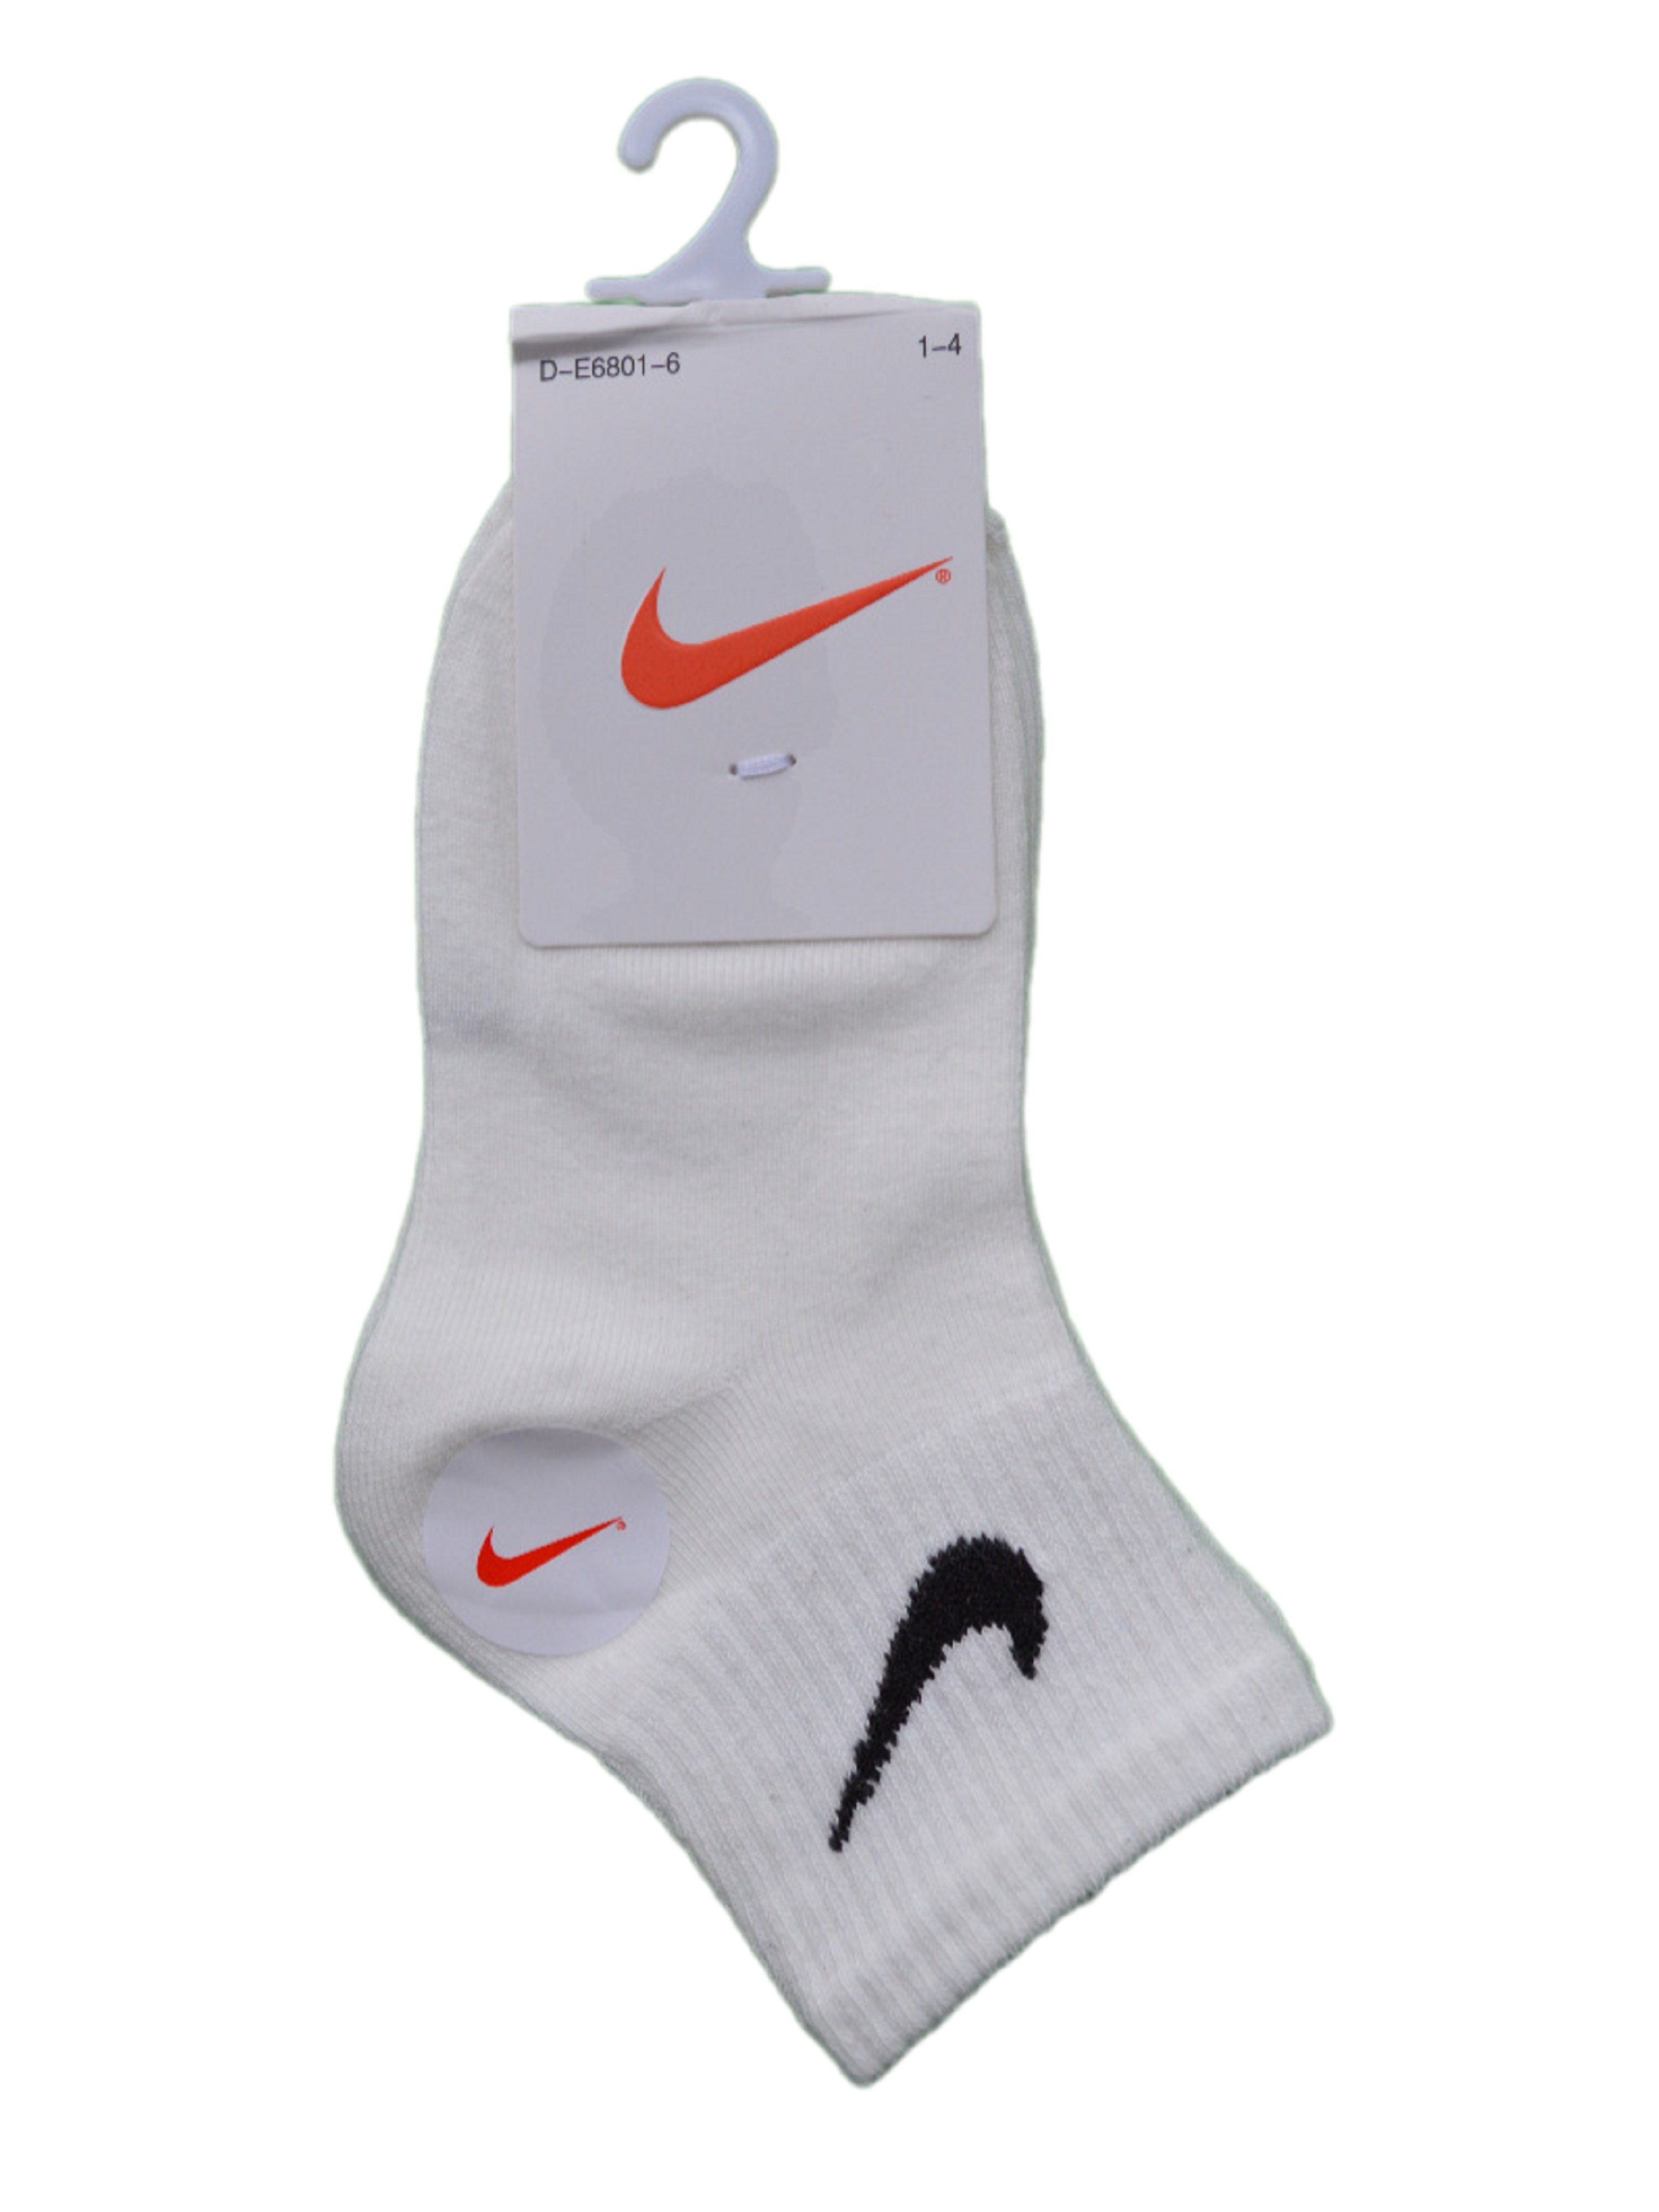 Носки детские Nike Ni-D-E6801-6, белый, 6 кроссовки детские nike md valiant bpv синий